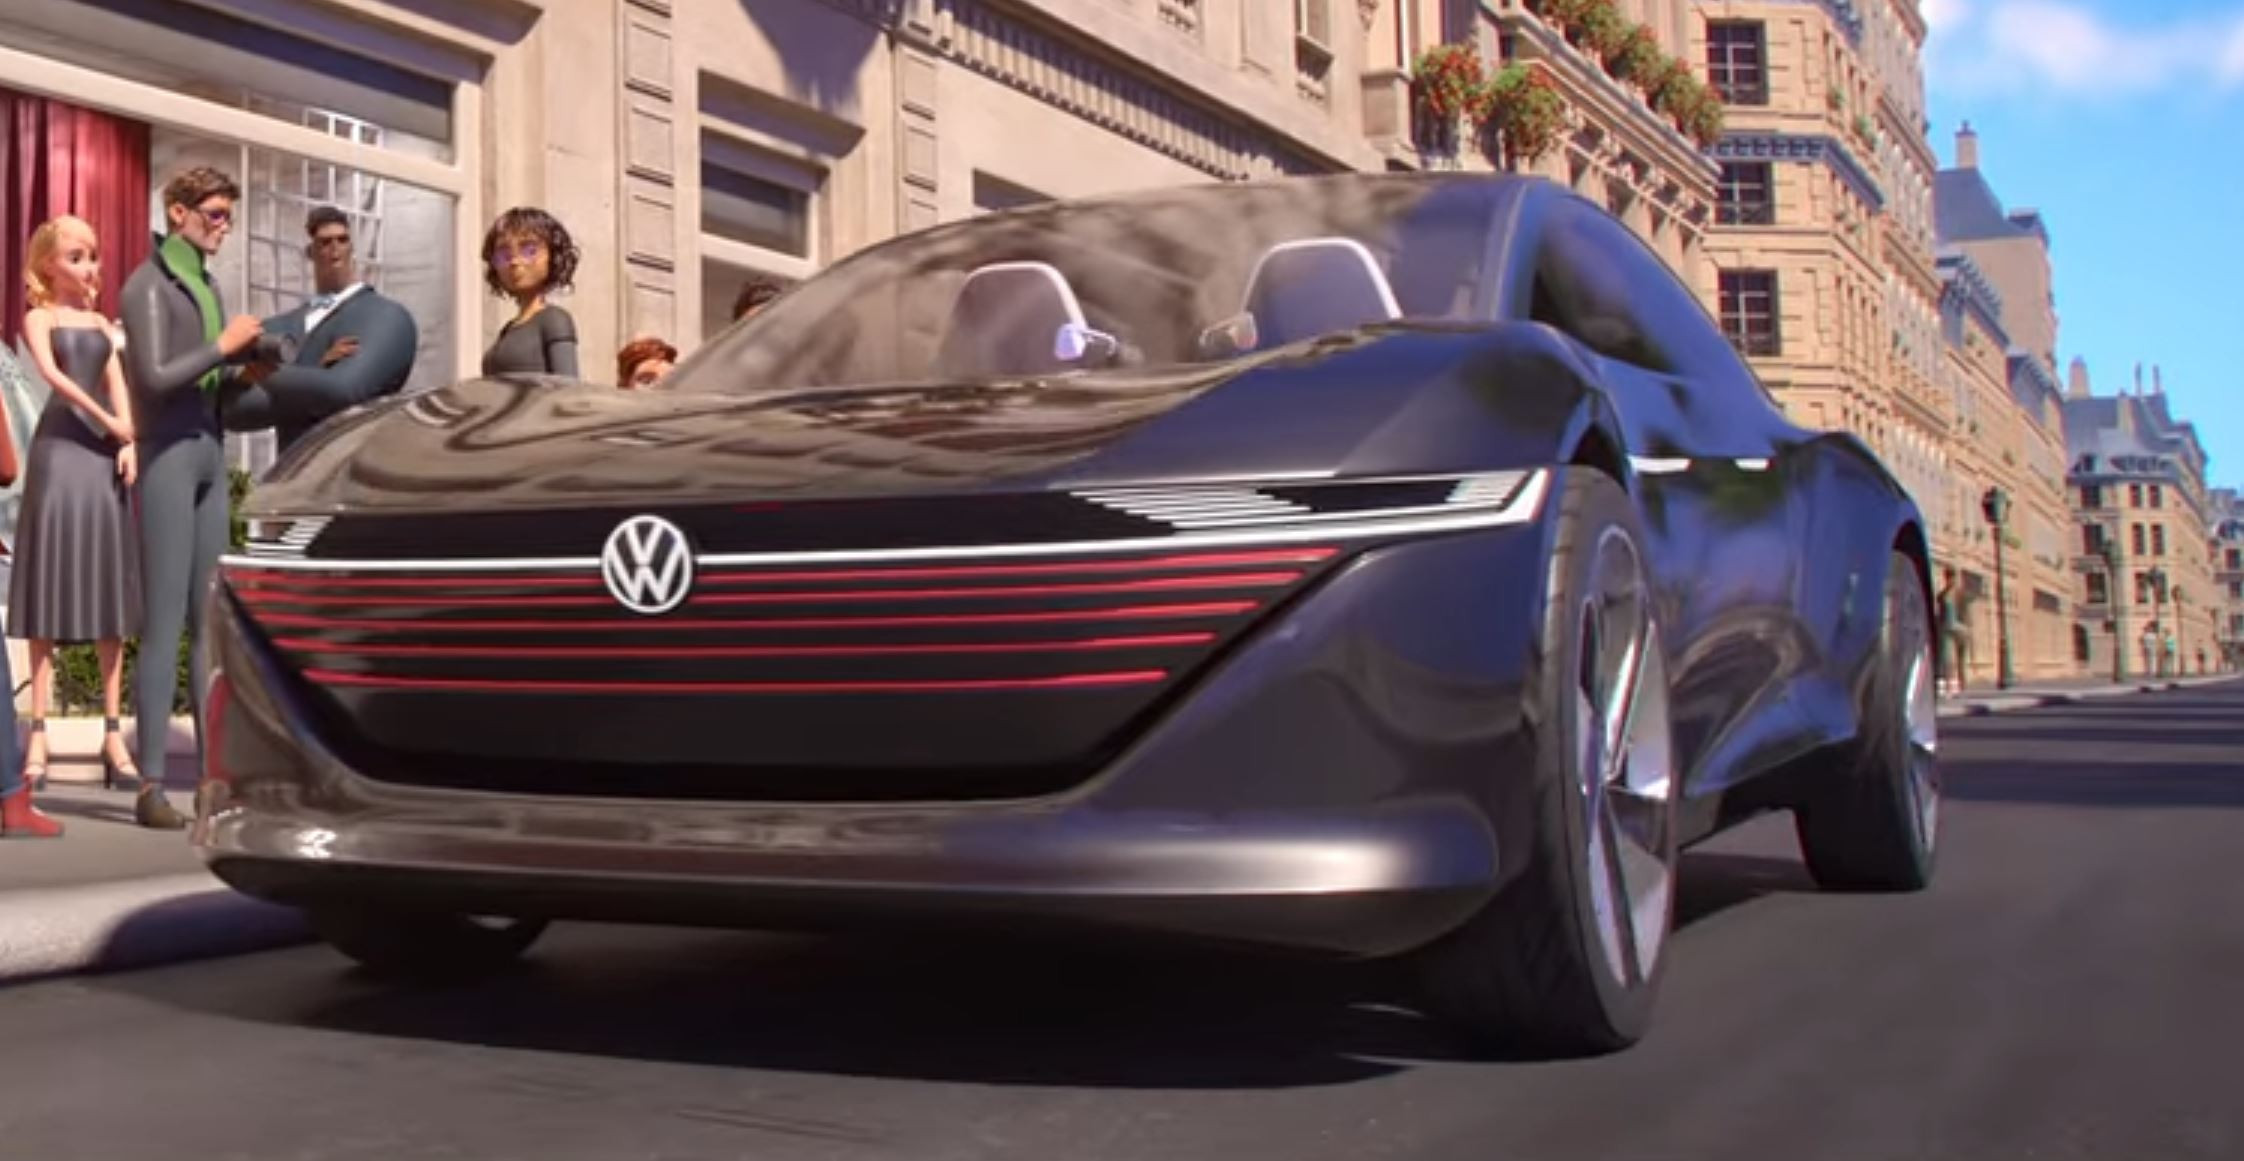 Miraculous Ladybug & Cat Noir prototype Volkswagen car @ Paris 12 june 2023  France - World premiere 